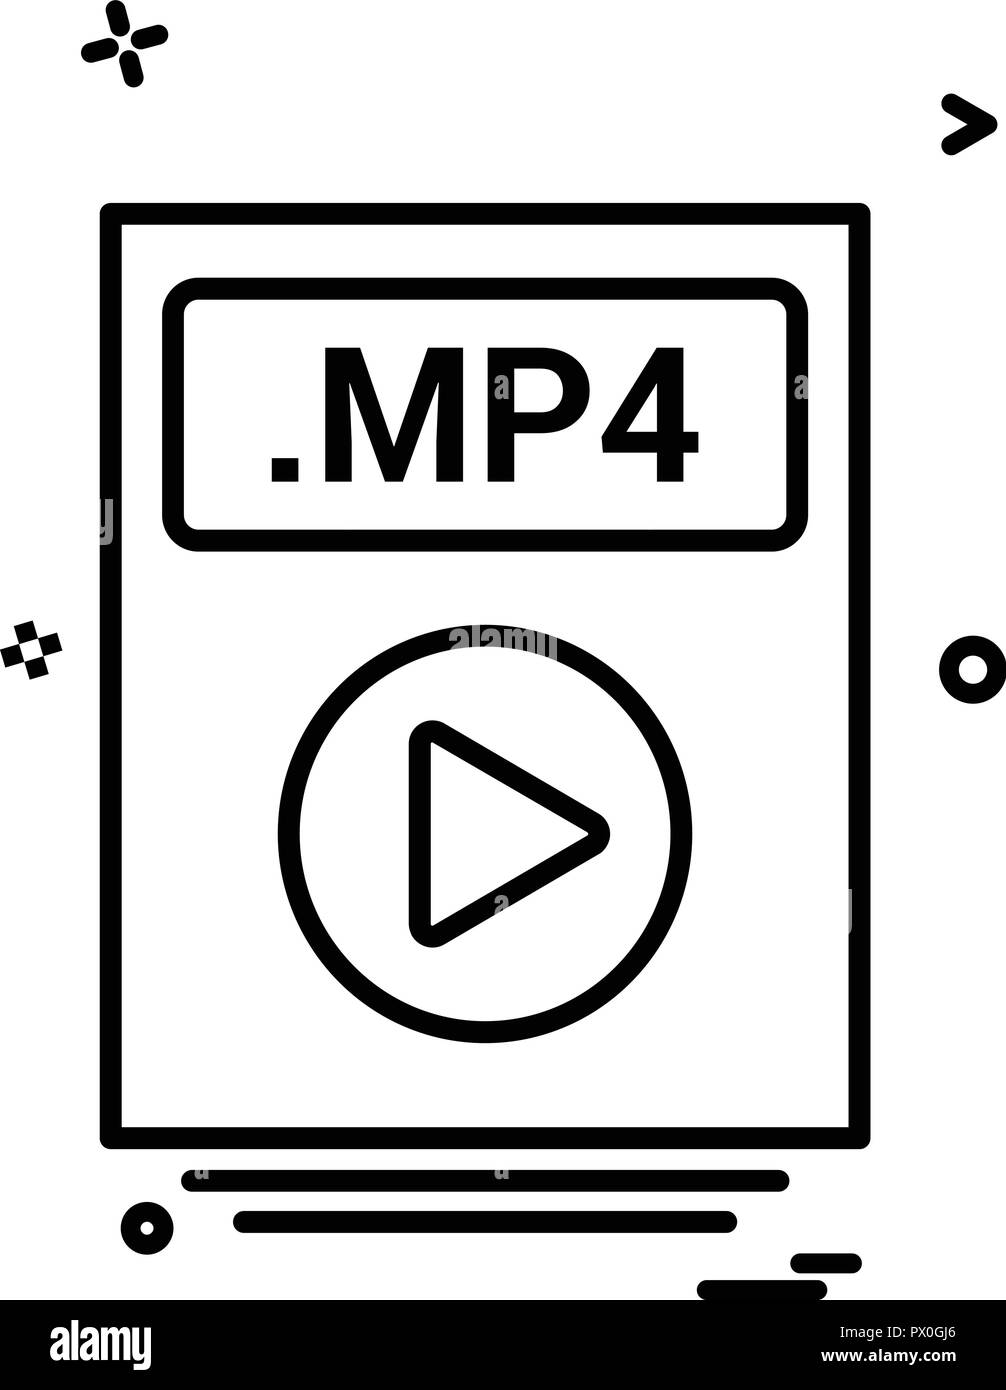 Reproductor MP4 Negro Con Auriculares. Ilustración Del Vector Ilustraciones  svg, vectoriales, clip art vectorizado libre de derechos. Image 59456950